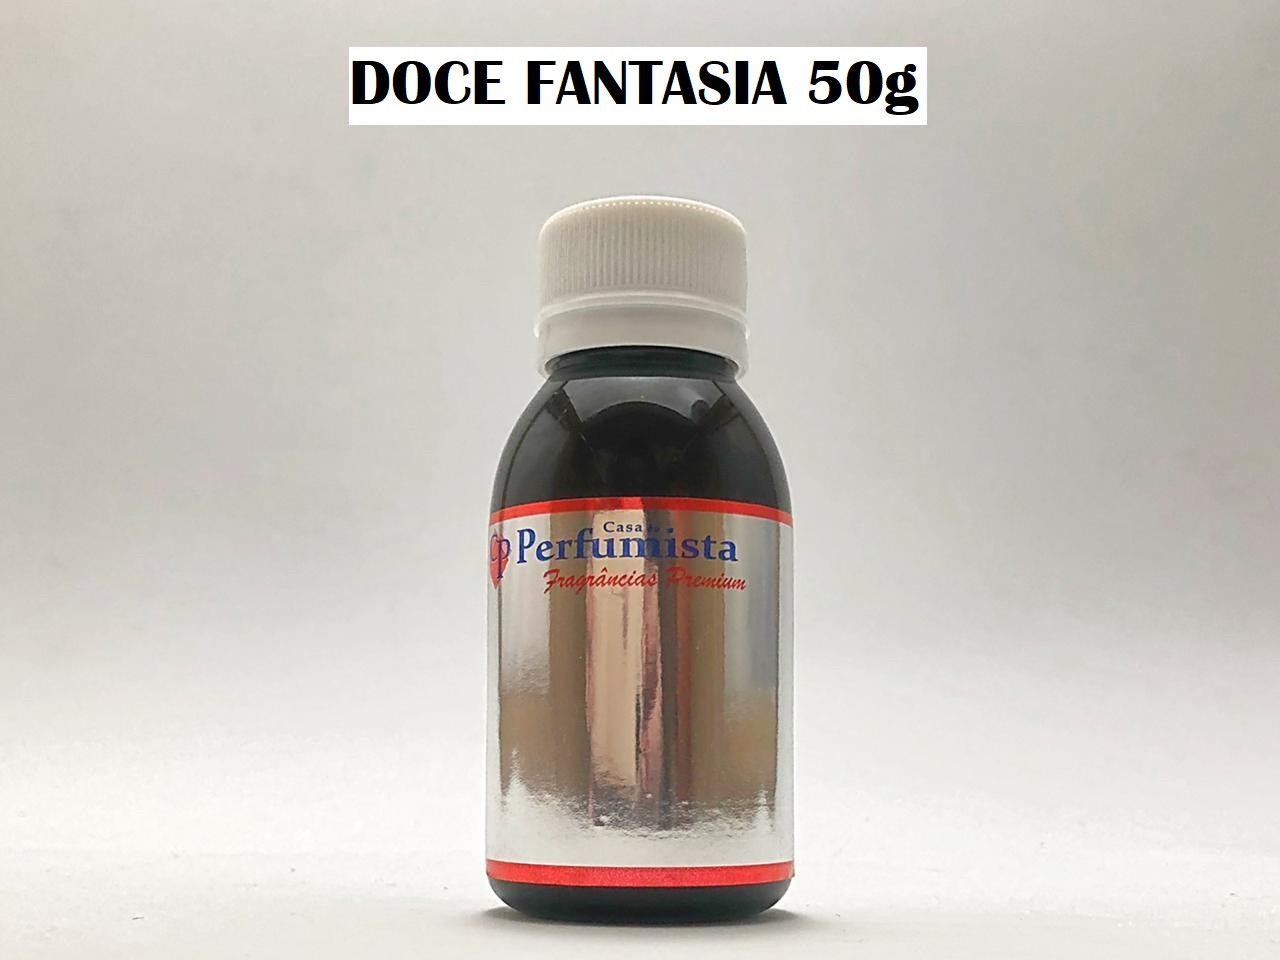 DOCE FANTASIA 50g - Inspiração: Fantasy Feminino